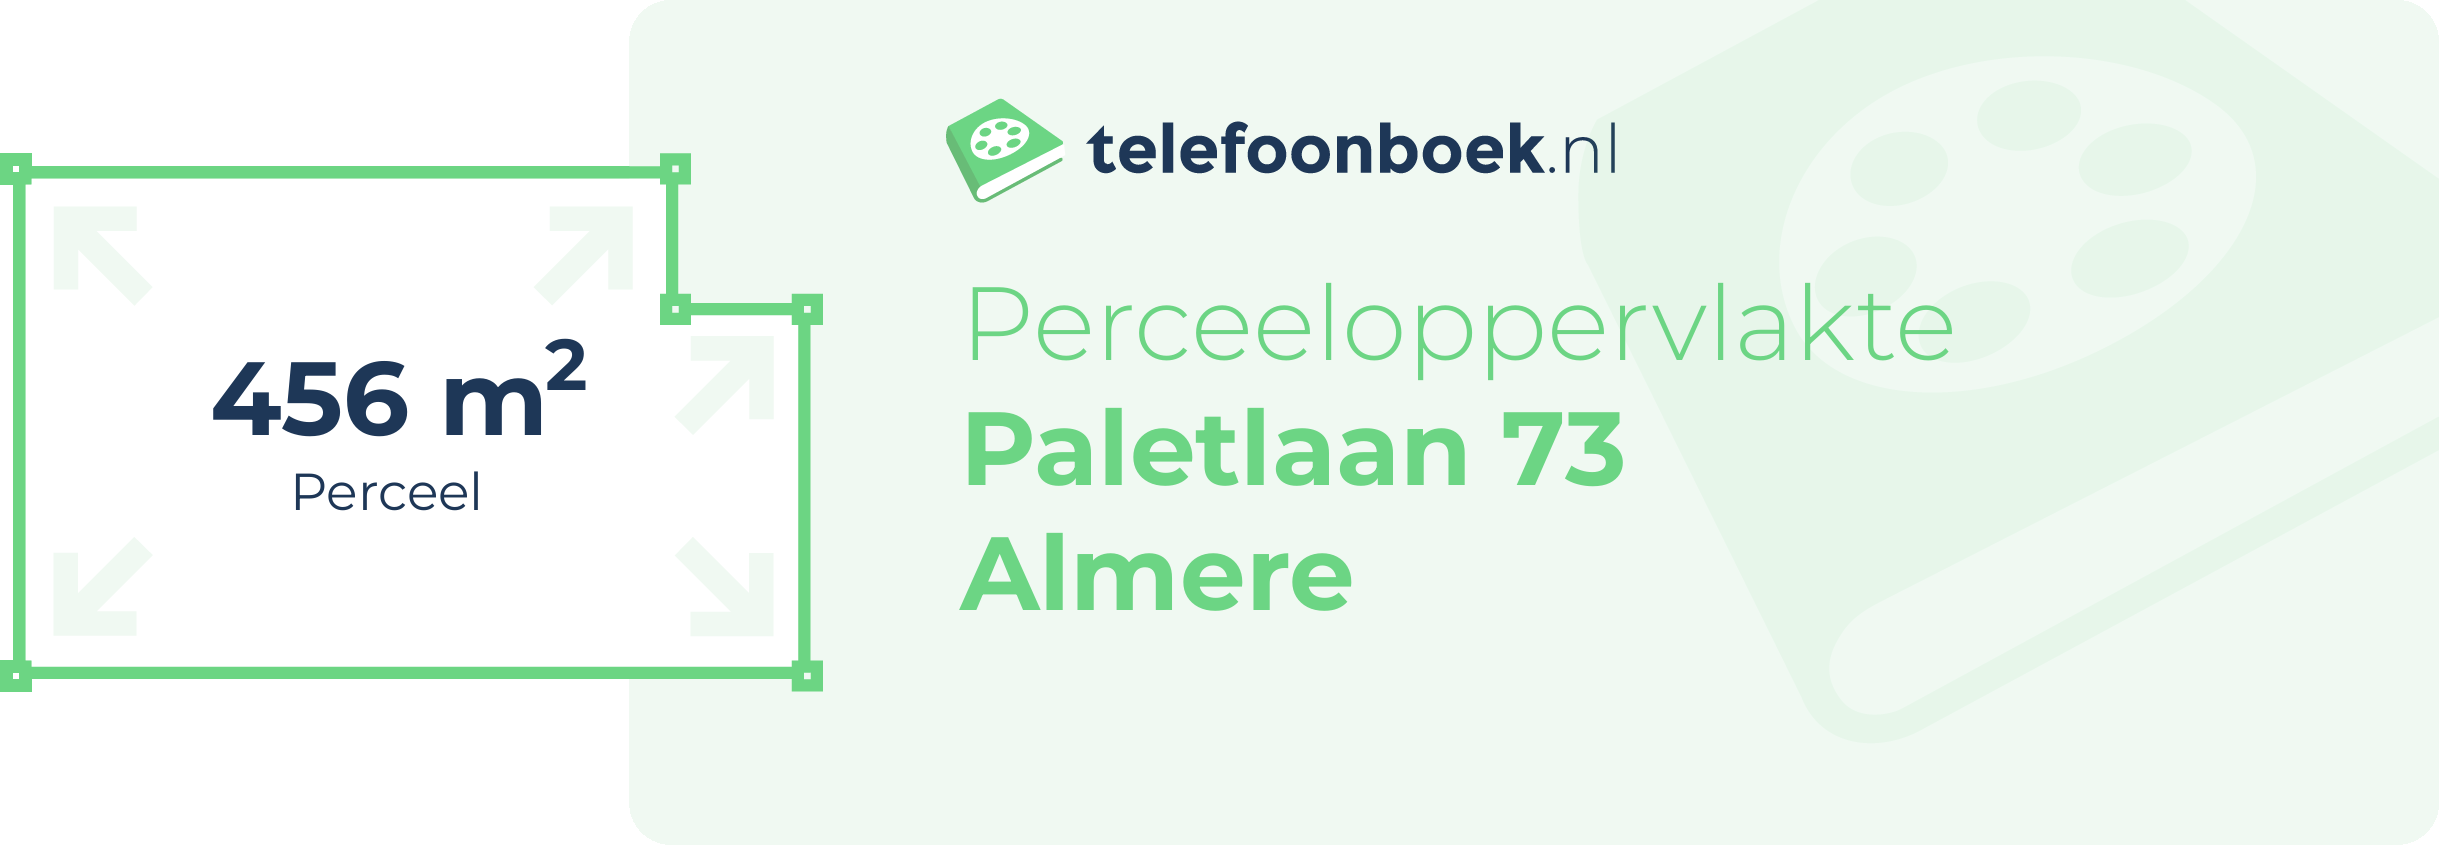 Perceeloppervlakte Paletlaan 73 Almere